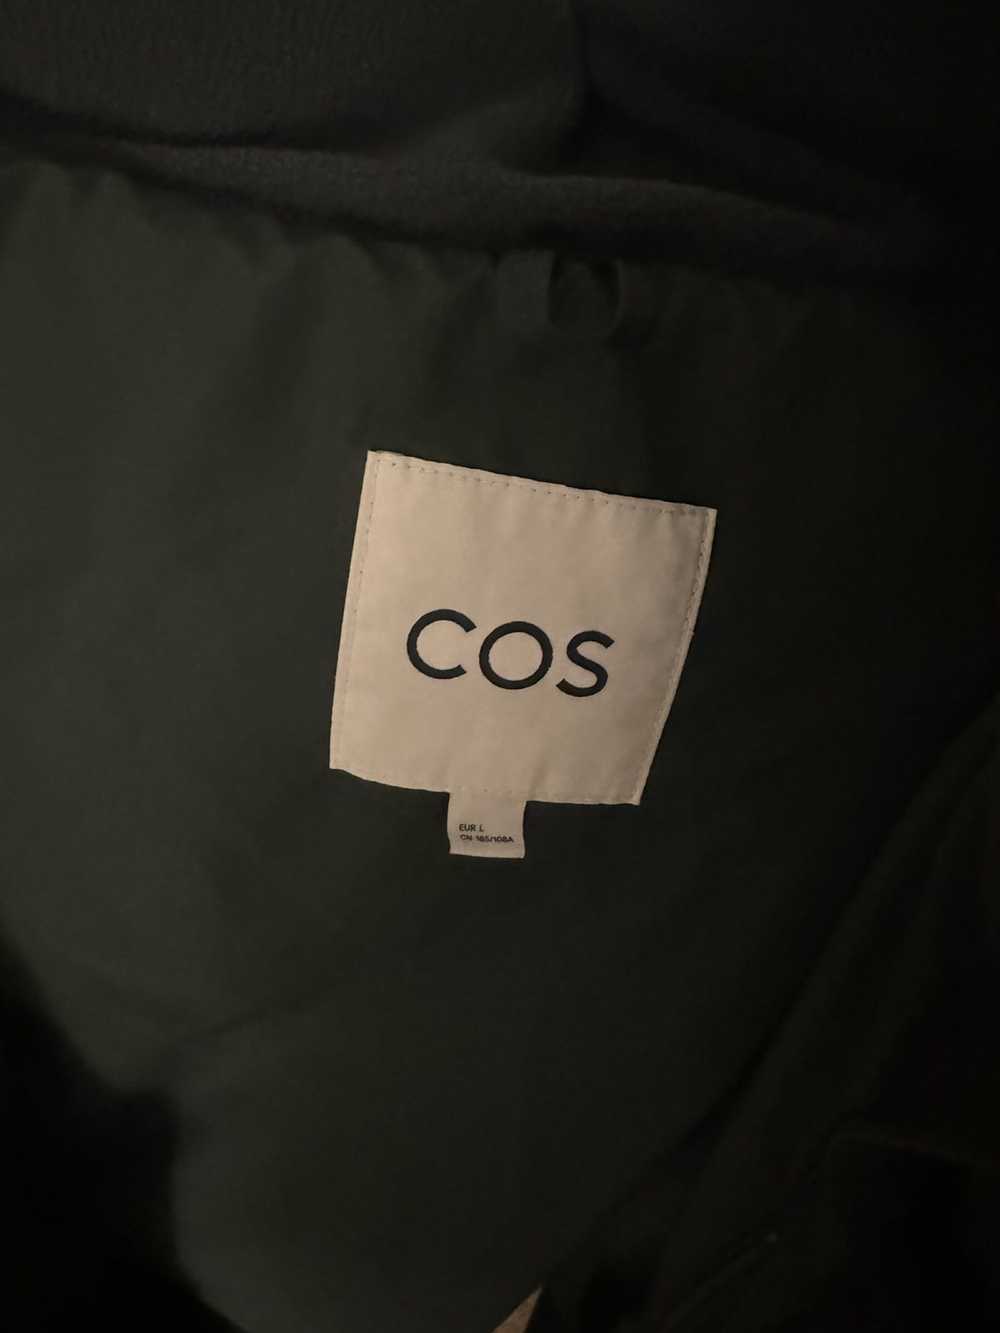 Cos COS down jacket - image 2